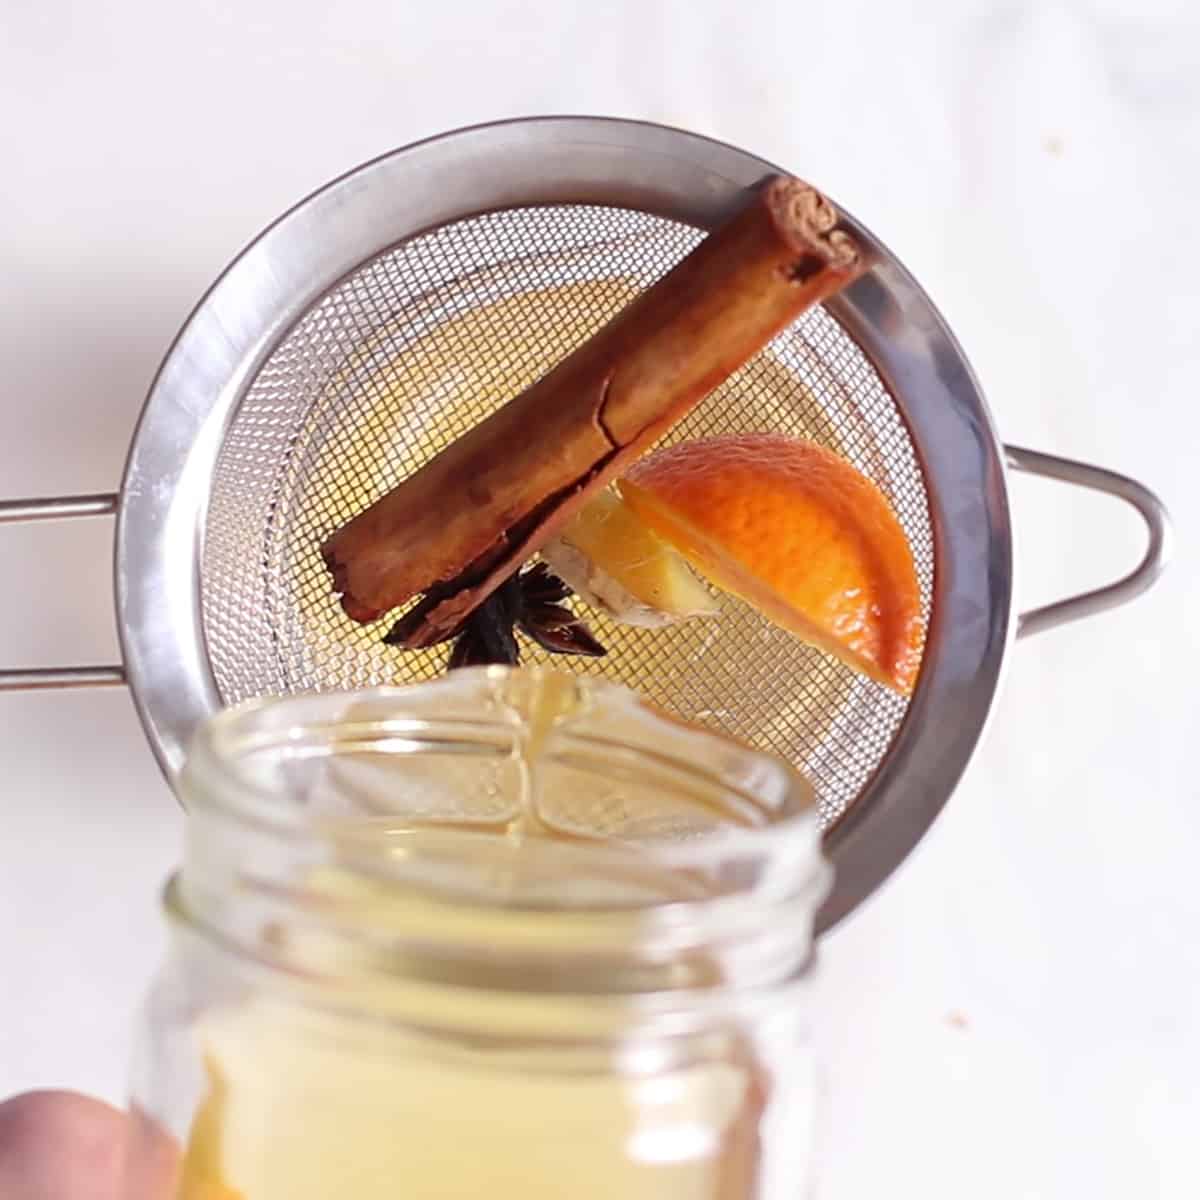 filtrare il sidro di mele speziato per uno.